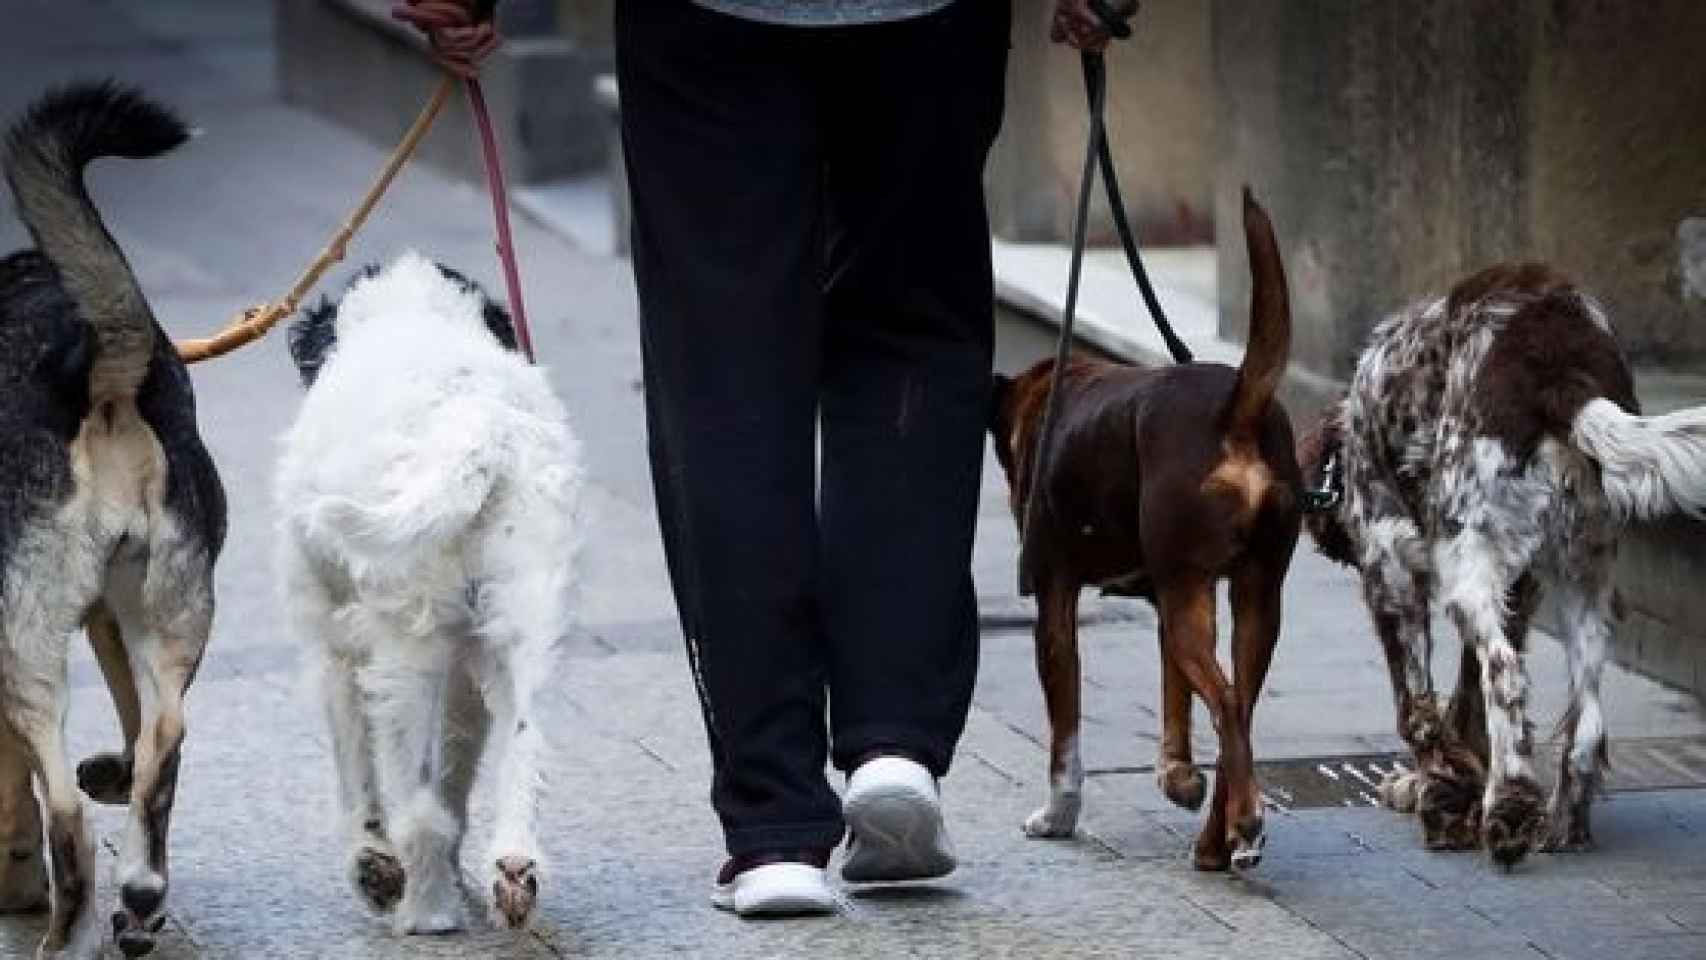 Una persona paseando varios perros.